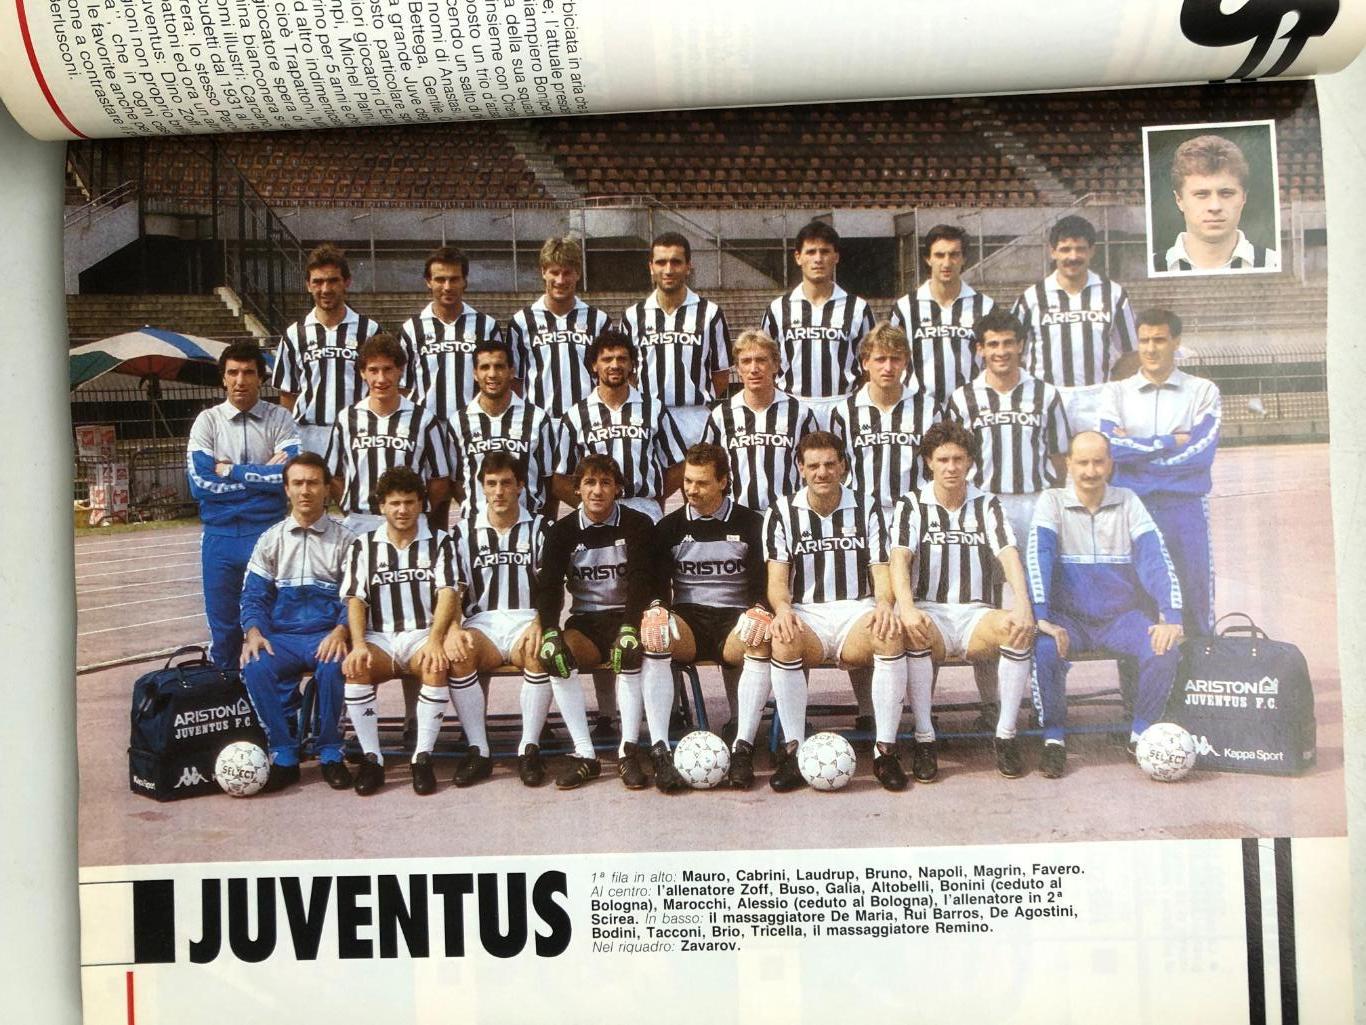 Италия ABC del CALCIO 1988/89 Все три дивизиона, фото команд и игроков, 322 стр. 1